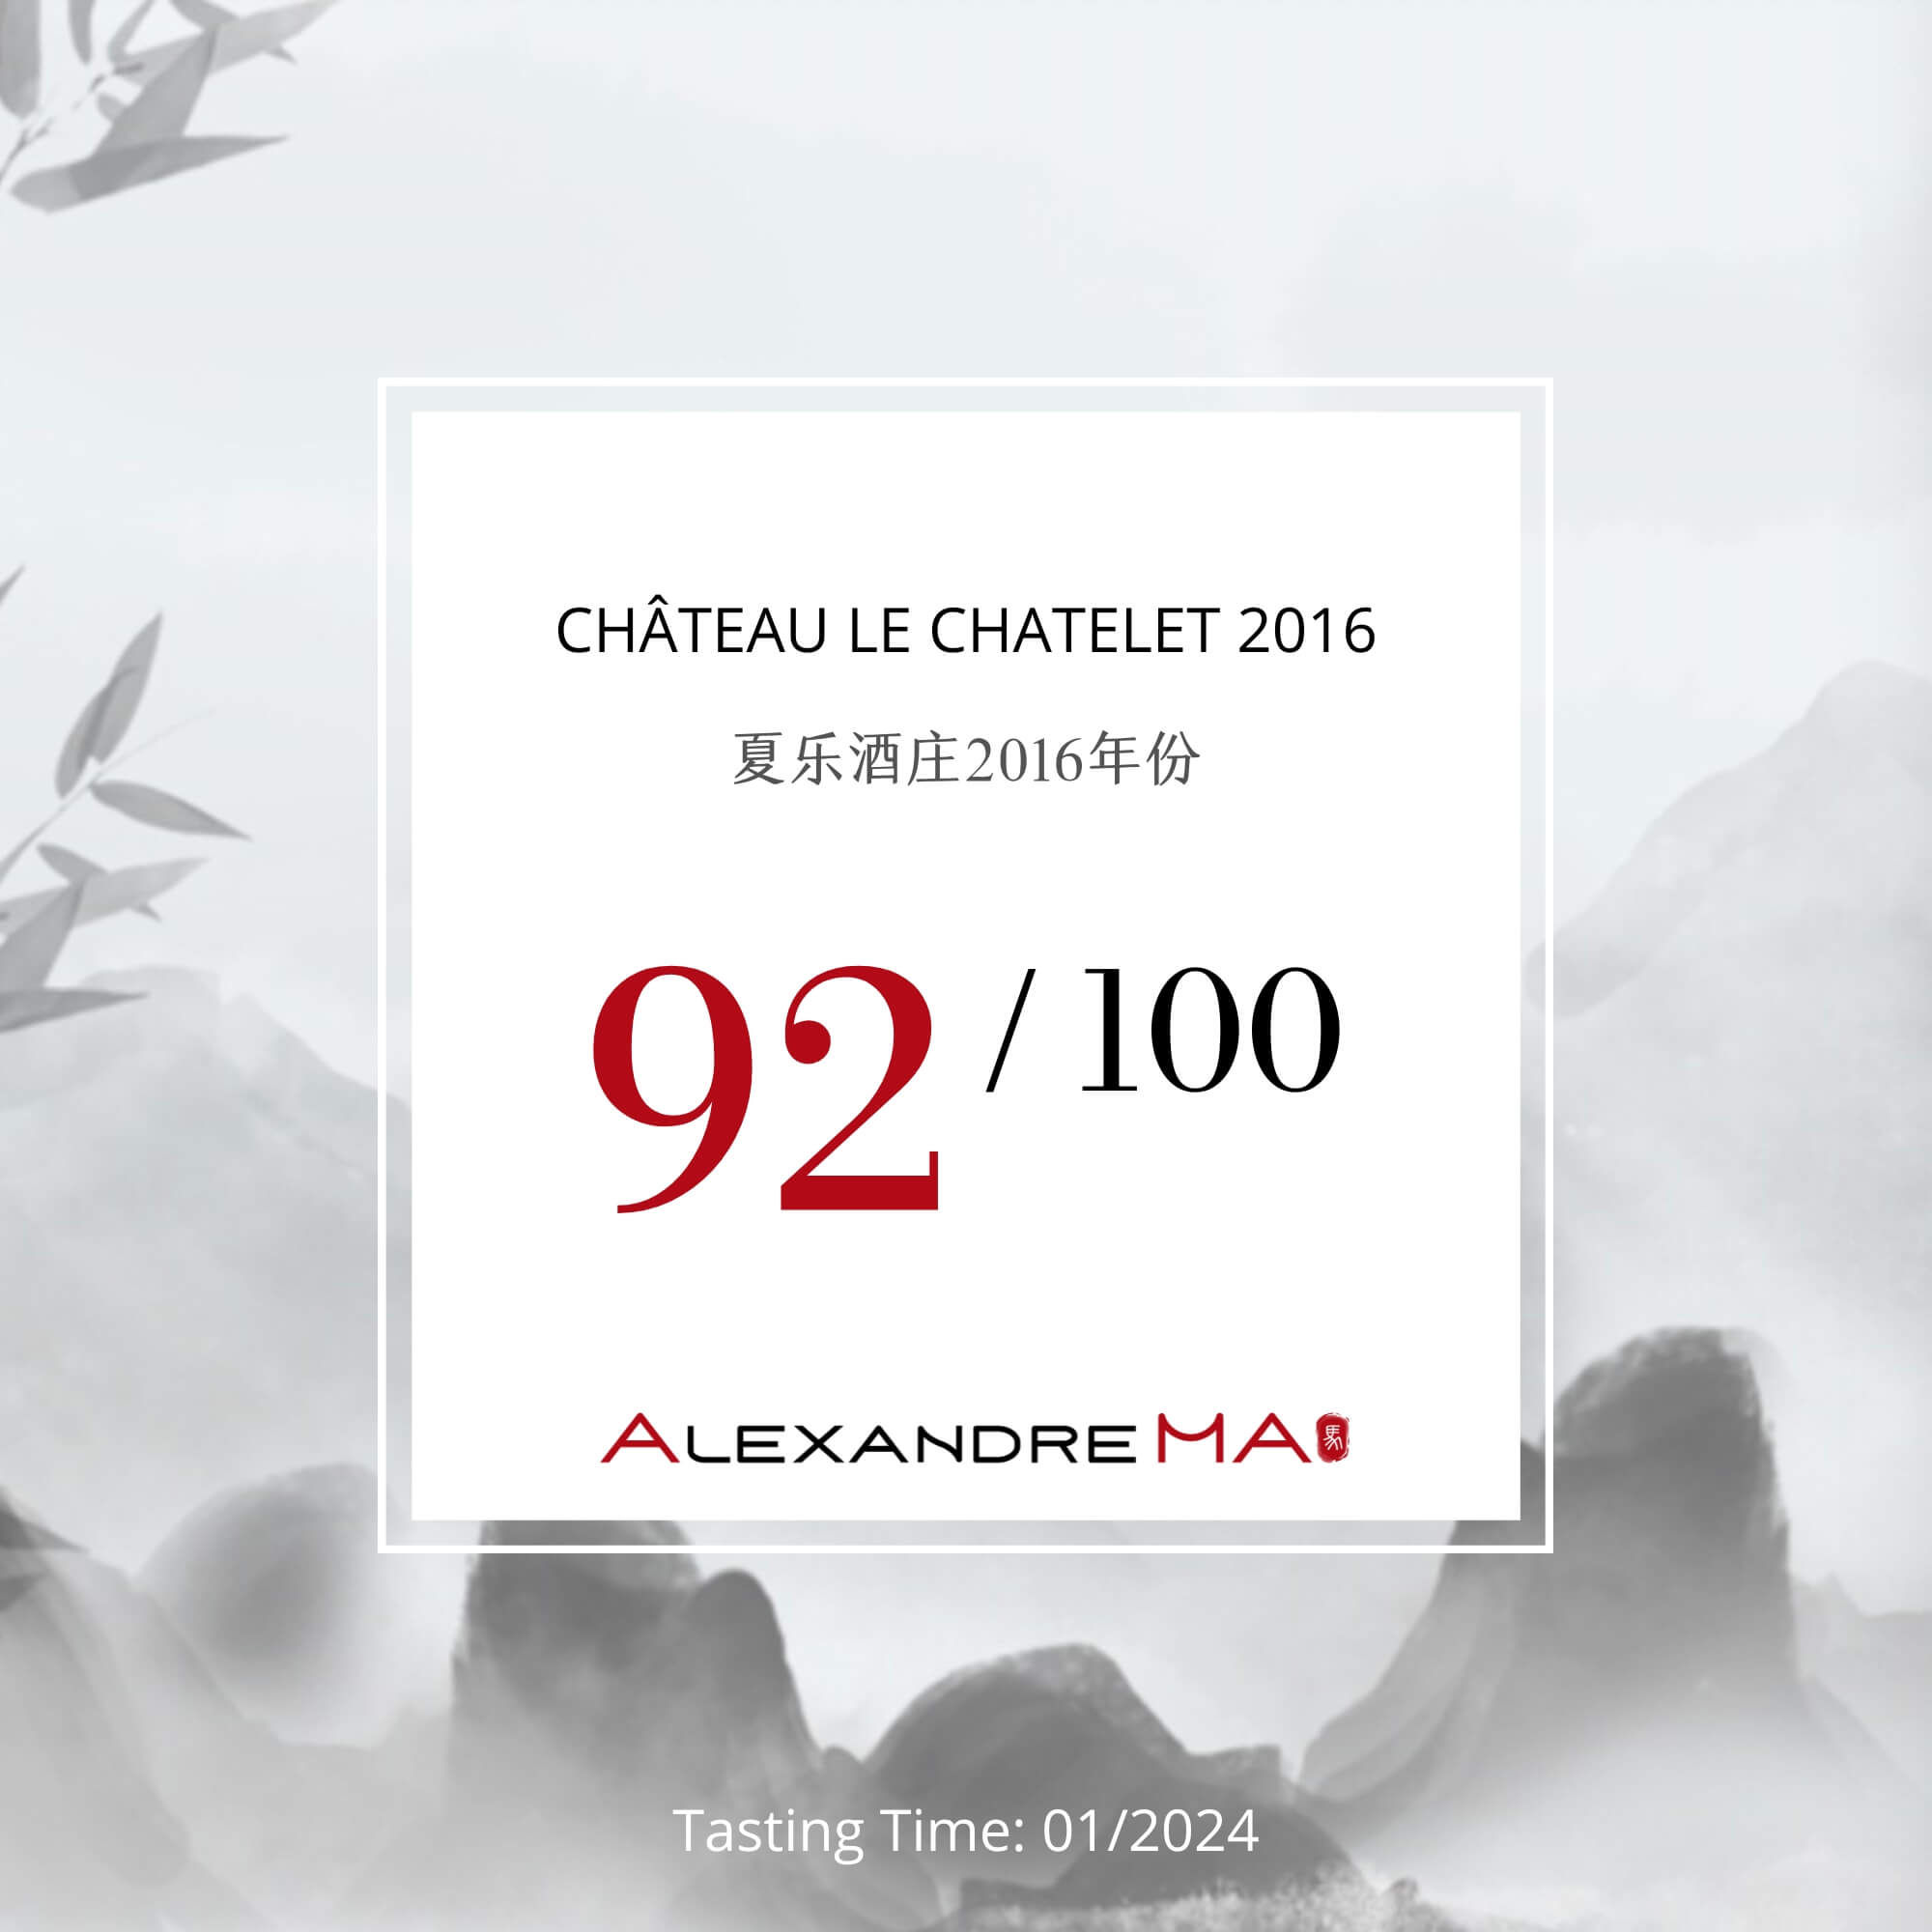 Château Le Chatelet 2016 - Alexandre MA